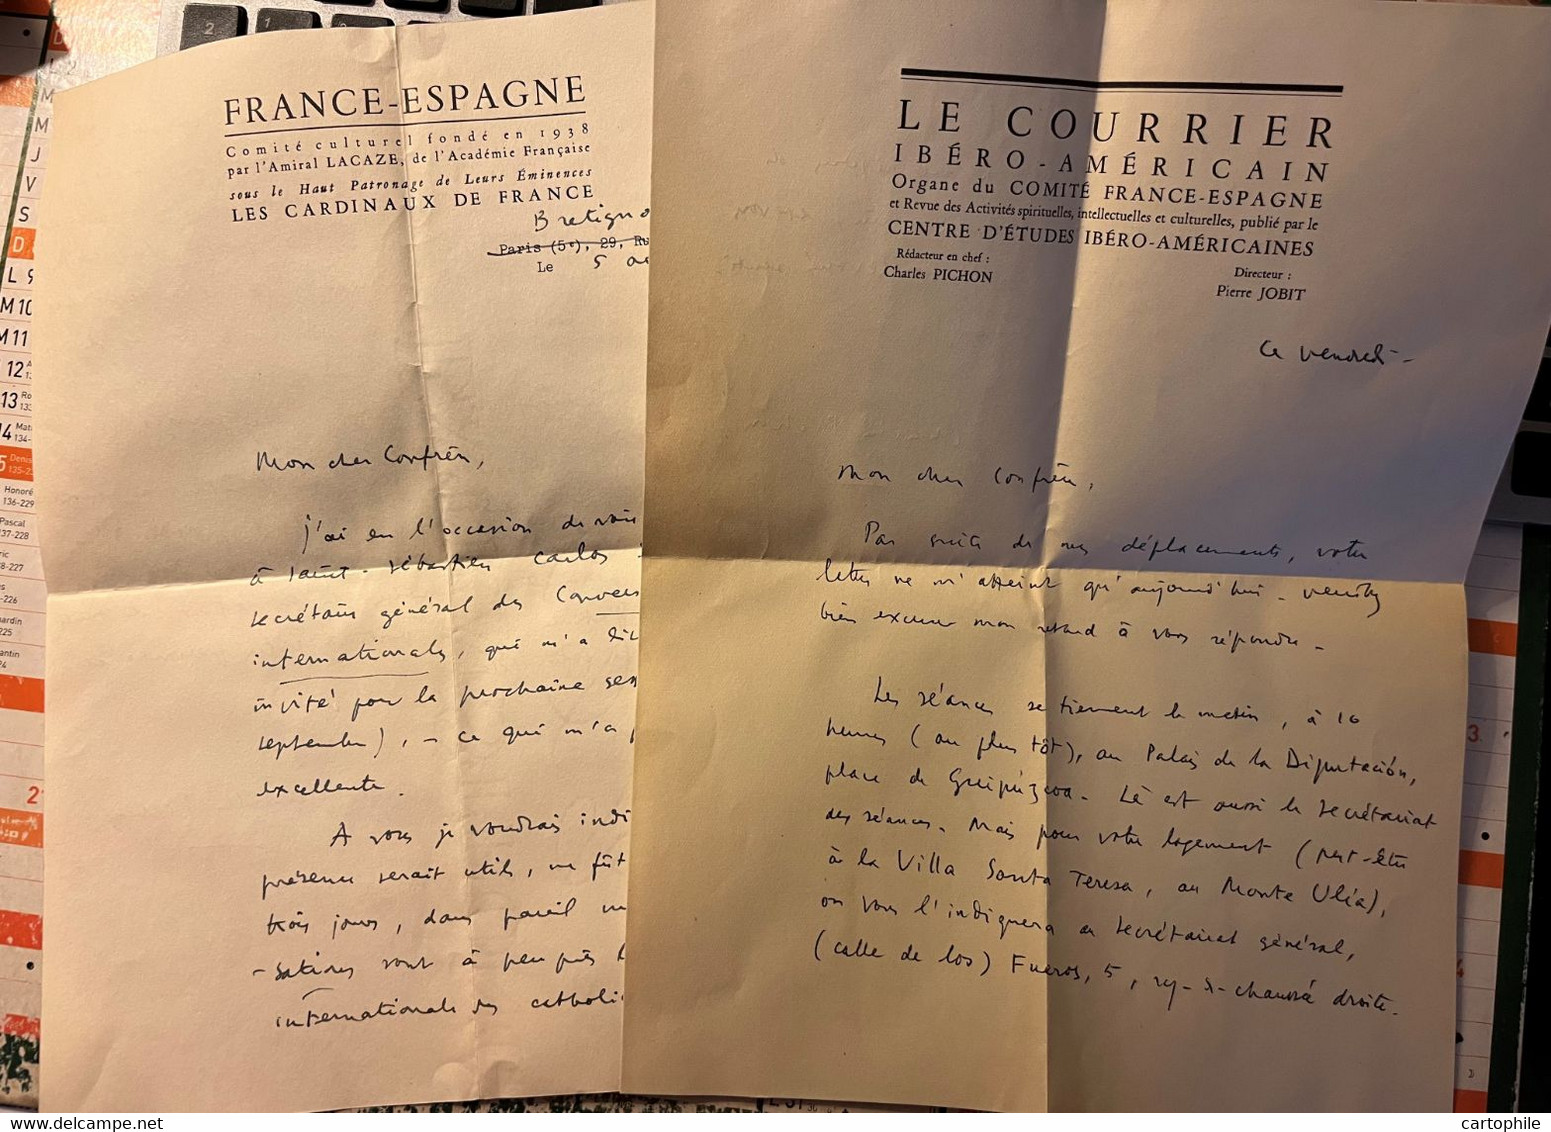 Autographe De Charles Pichon - Courrier Ibero Americain Comite France Espagne 1957 Esperanto Religion Papauté Vatican - Manuscrits